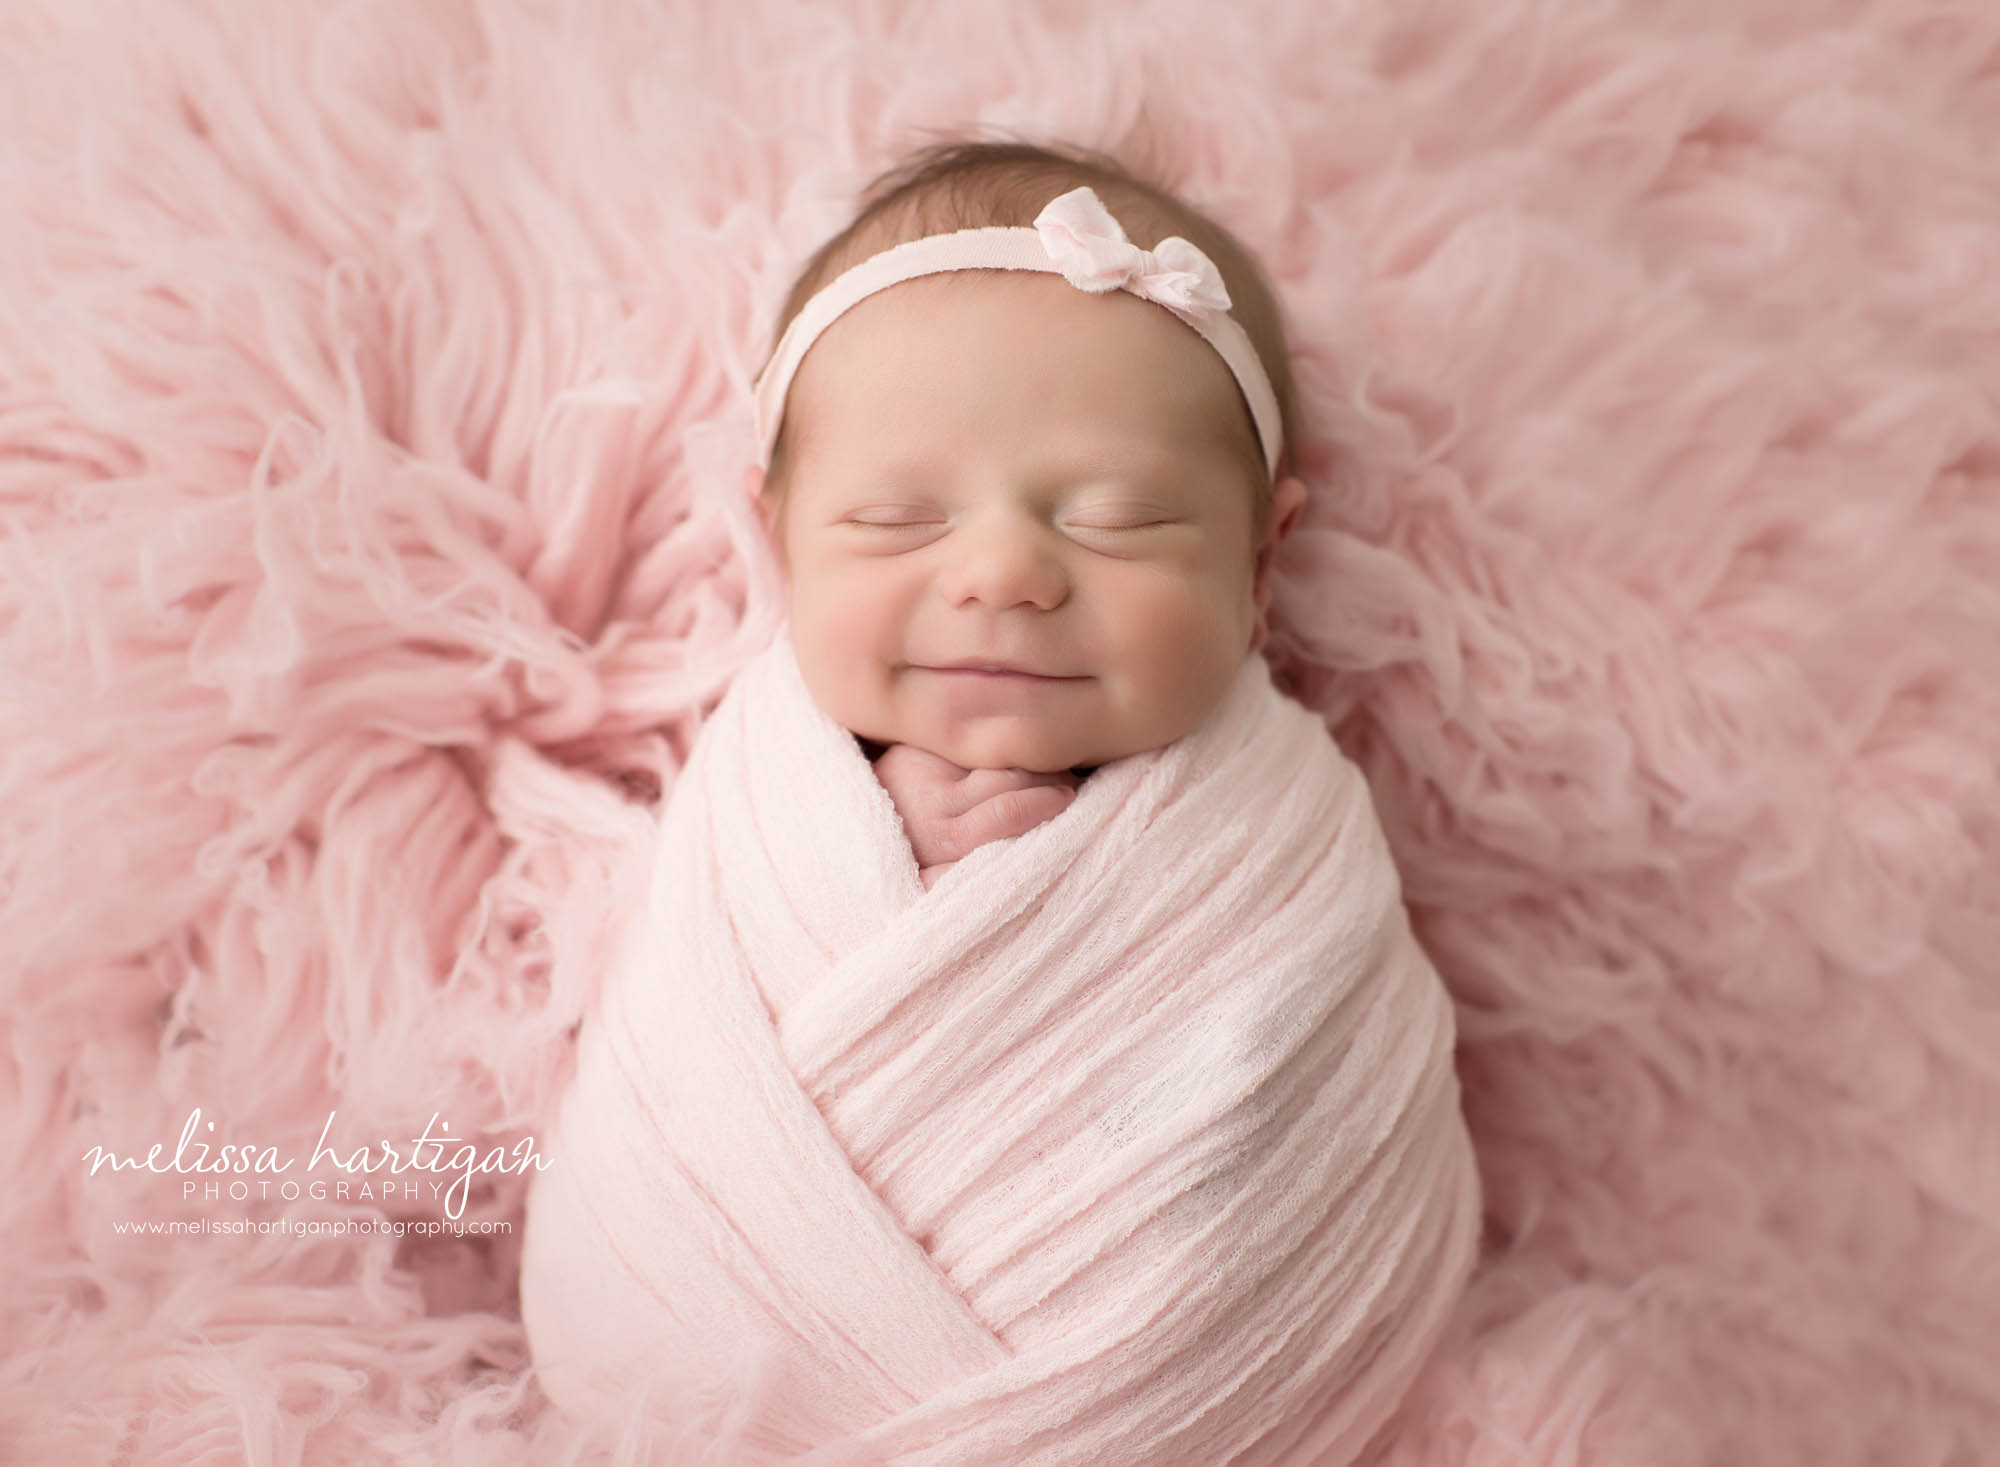 newborn baby girl smiling in picture Massachusetts newborn photographer